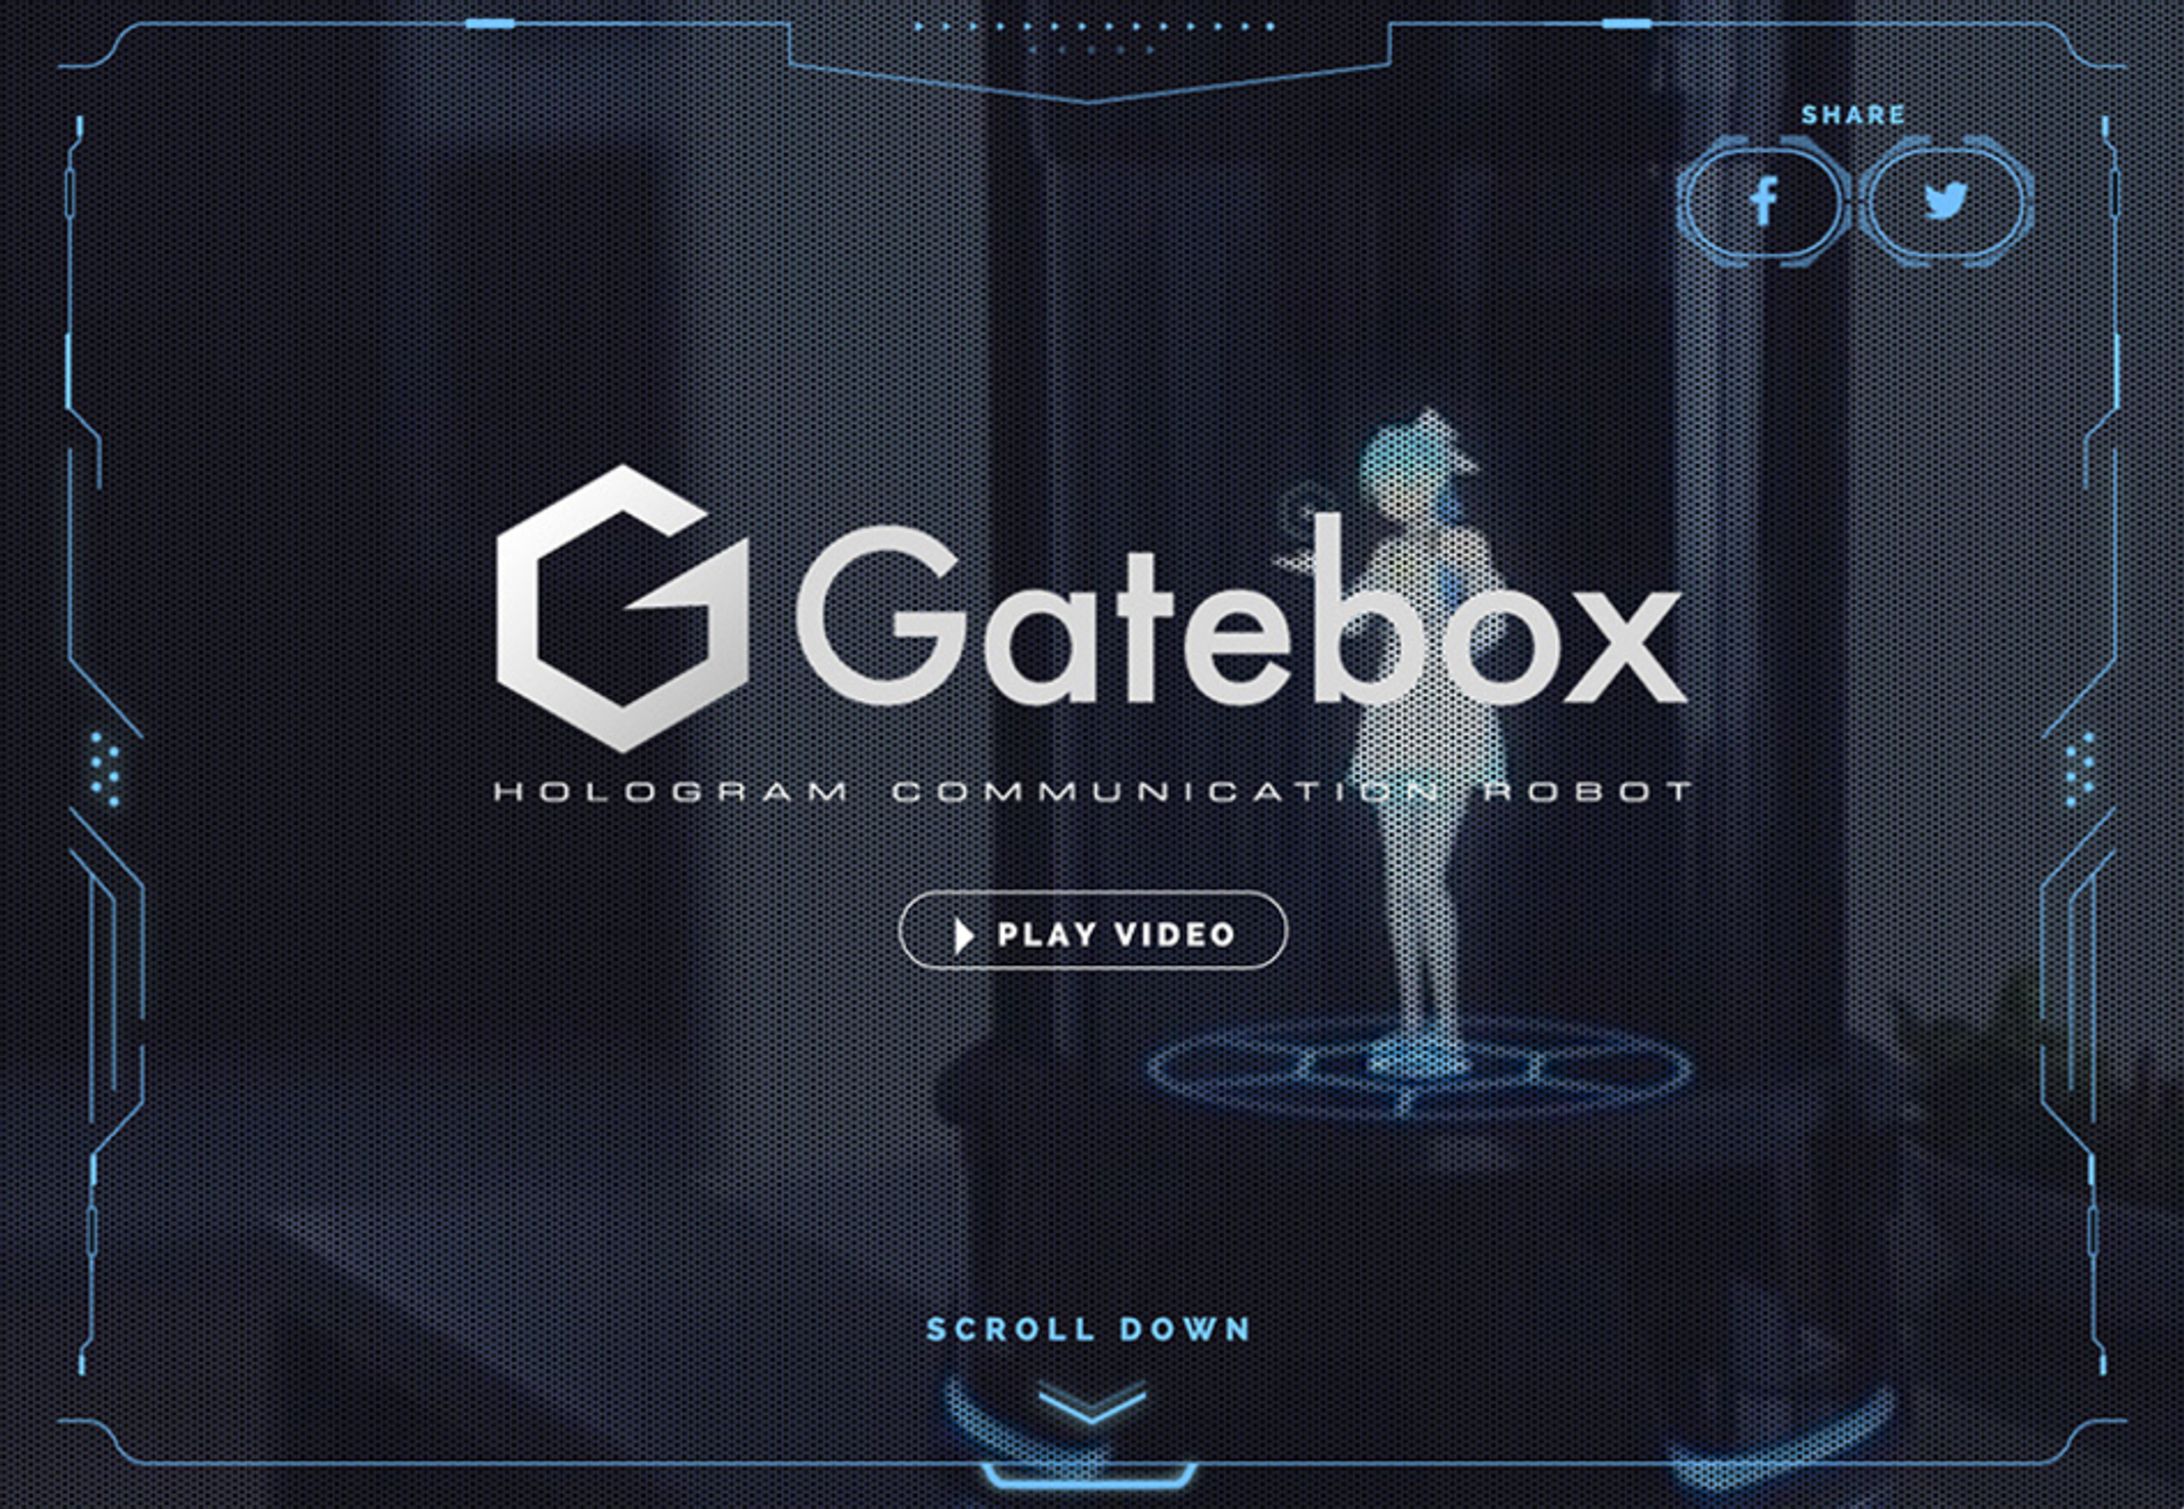 Gatebox website-1